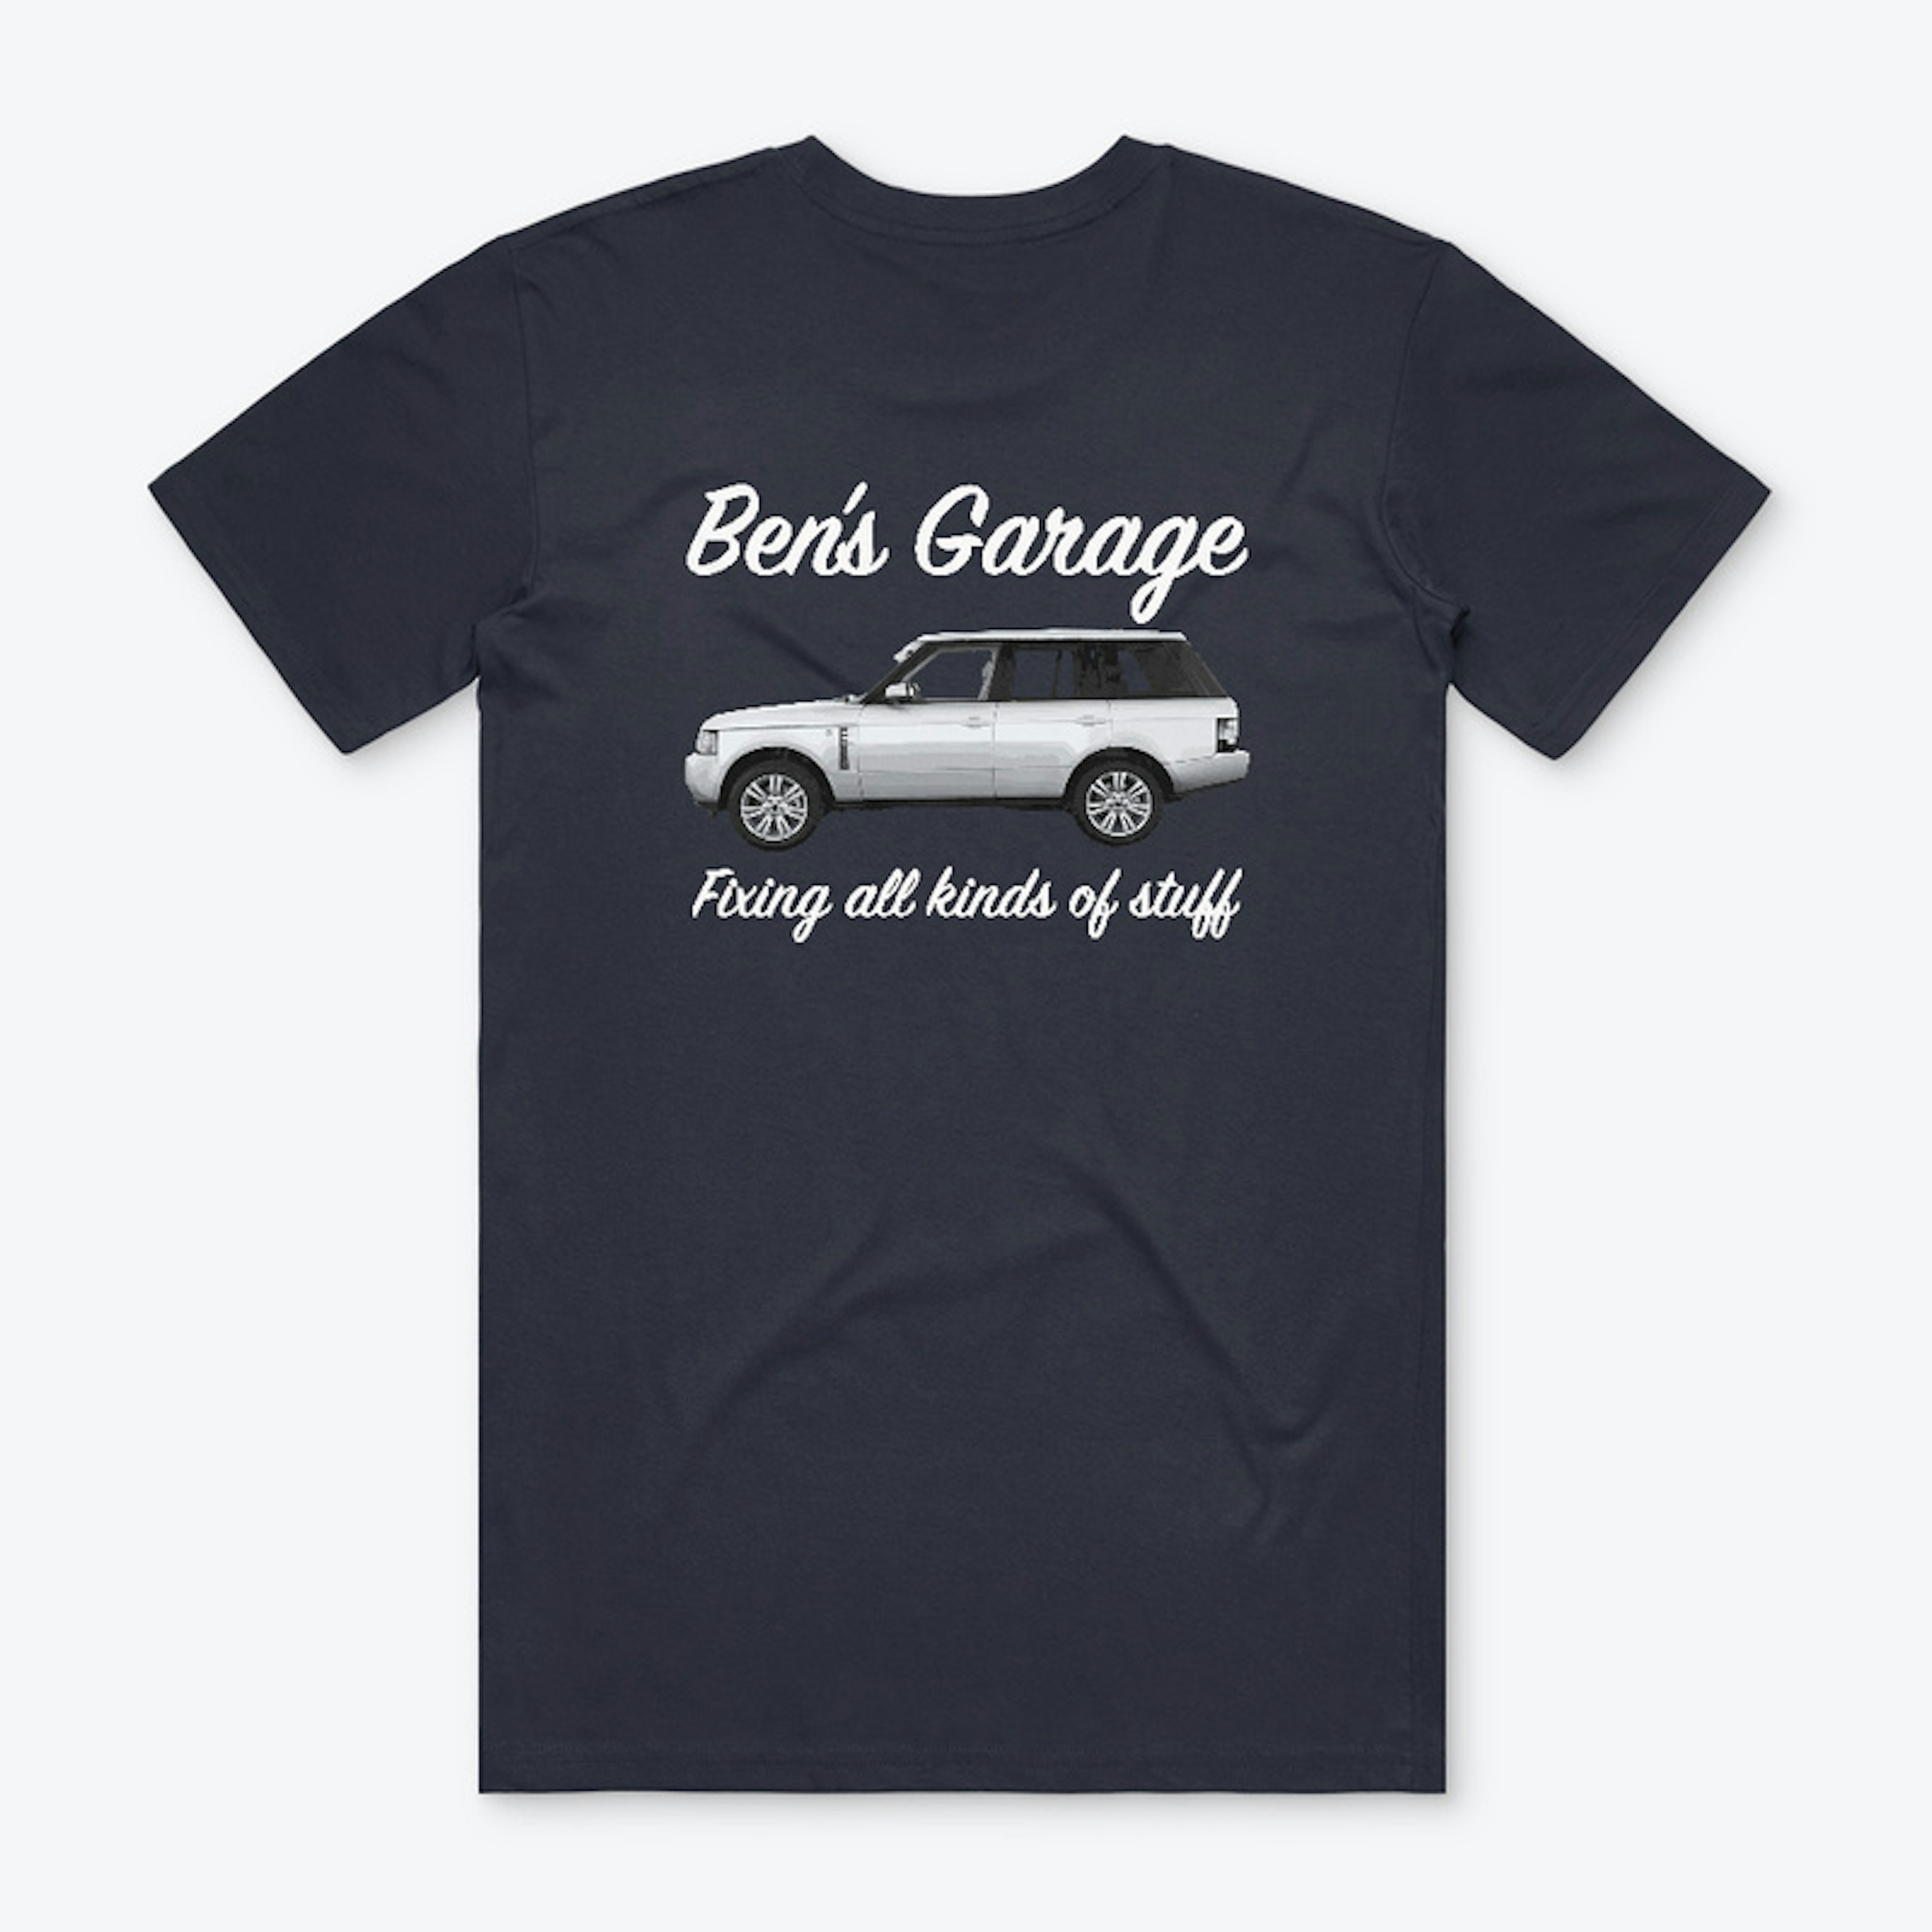 Ben's Garage Range Rover T shirt.